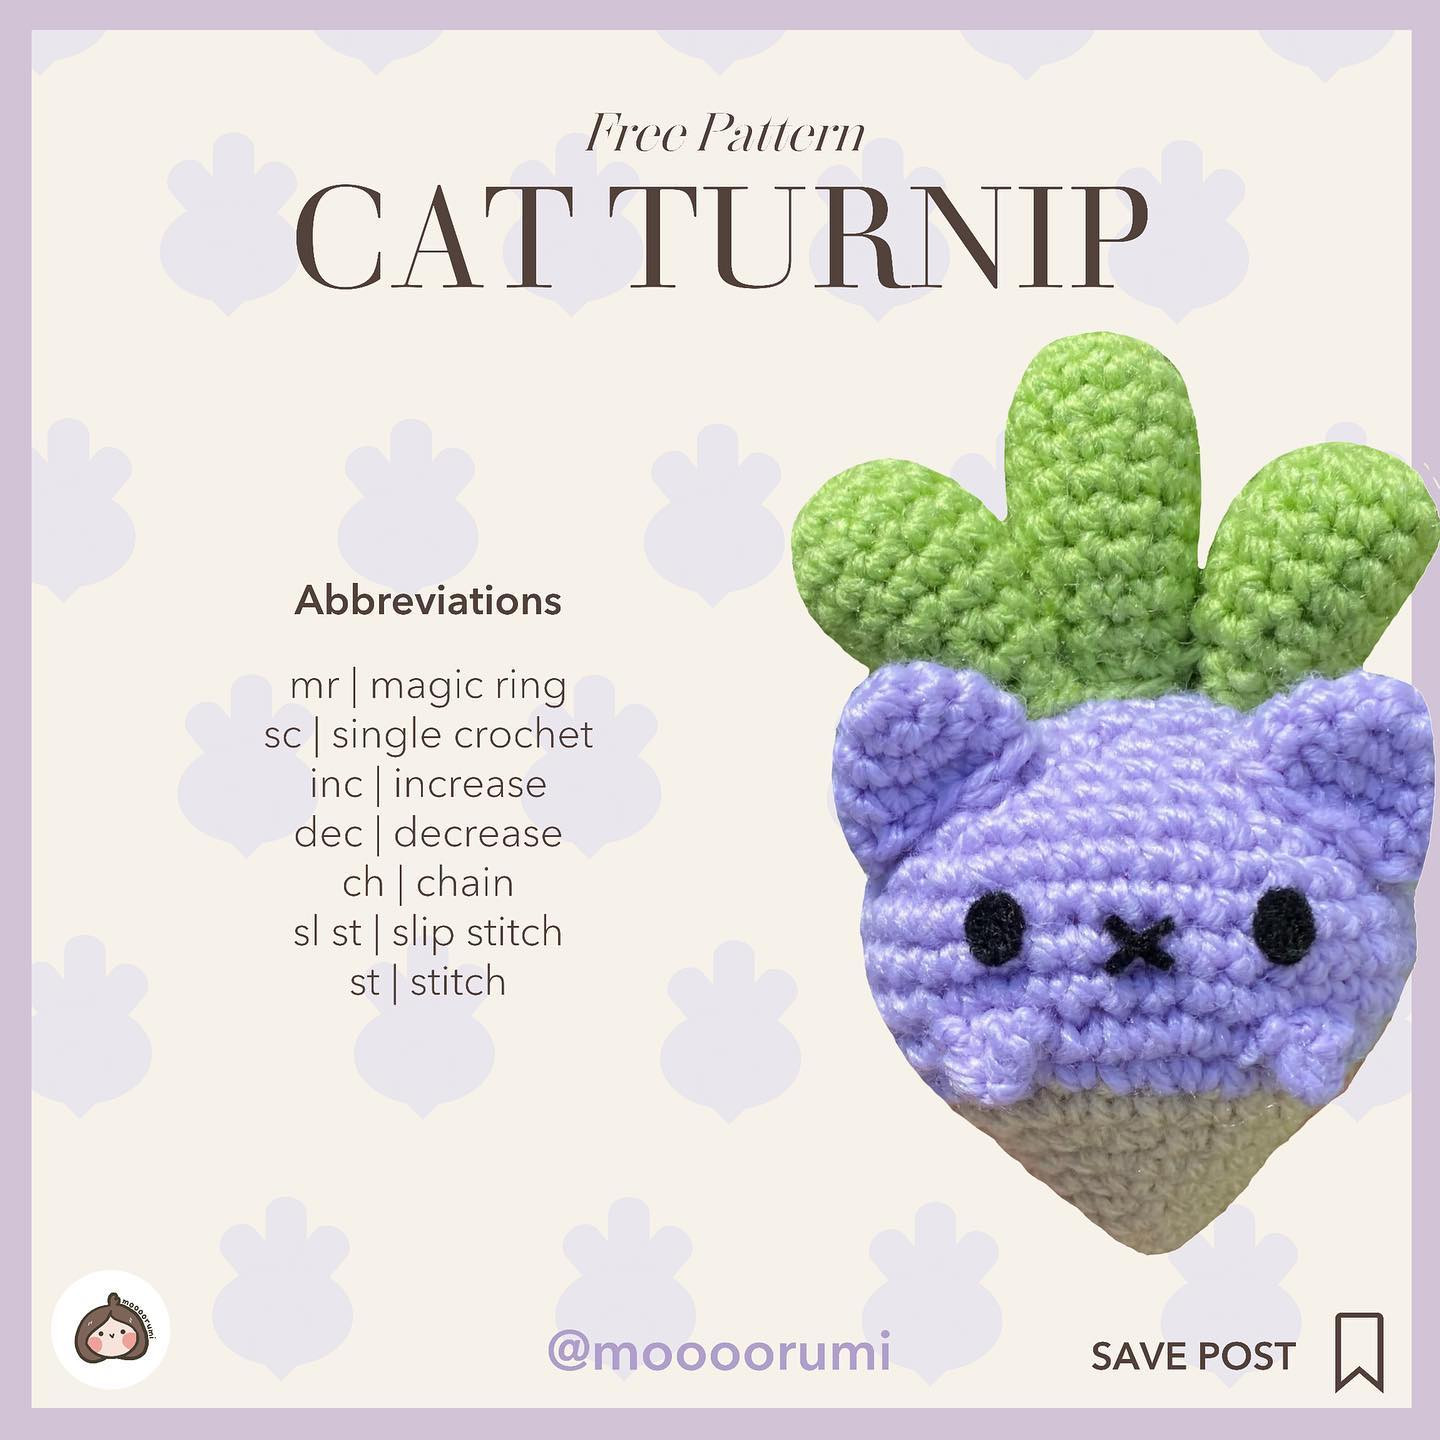 catnip the cat turnip foreword